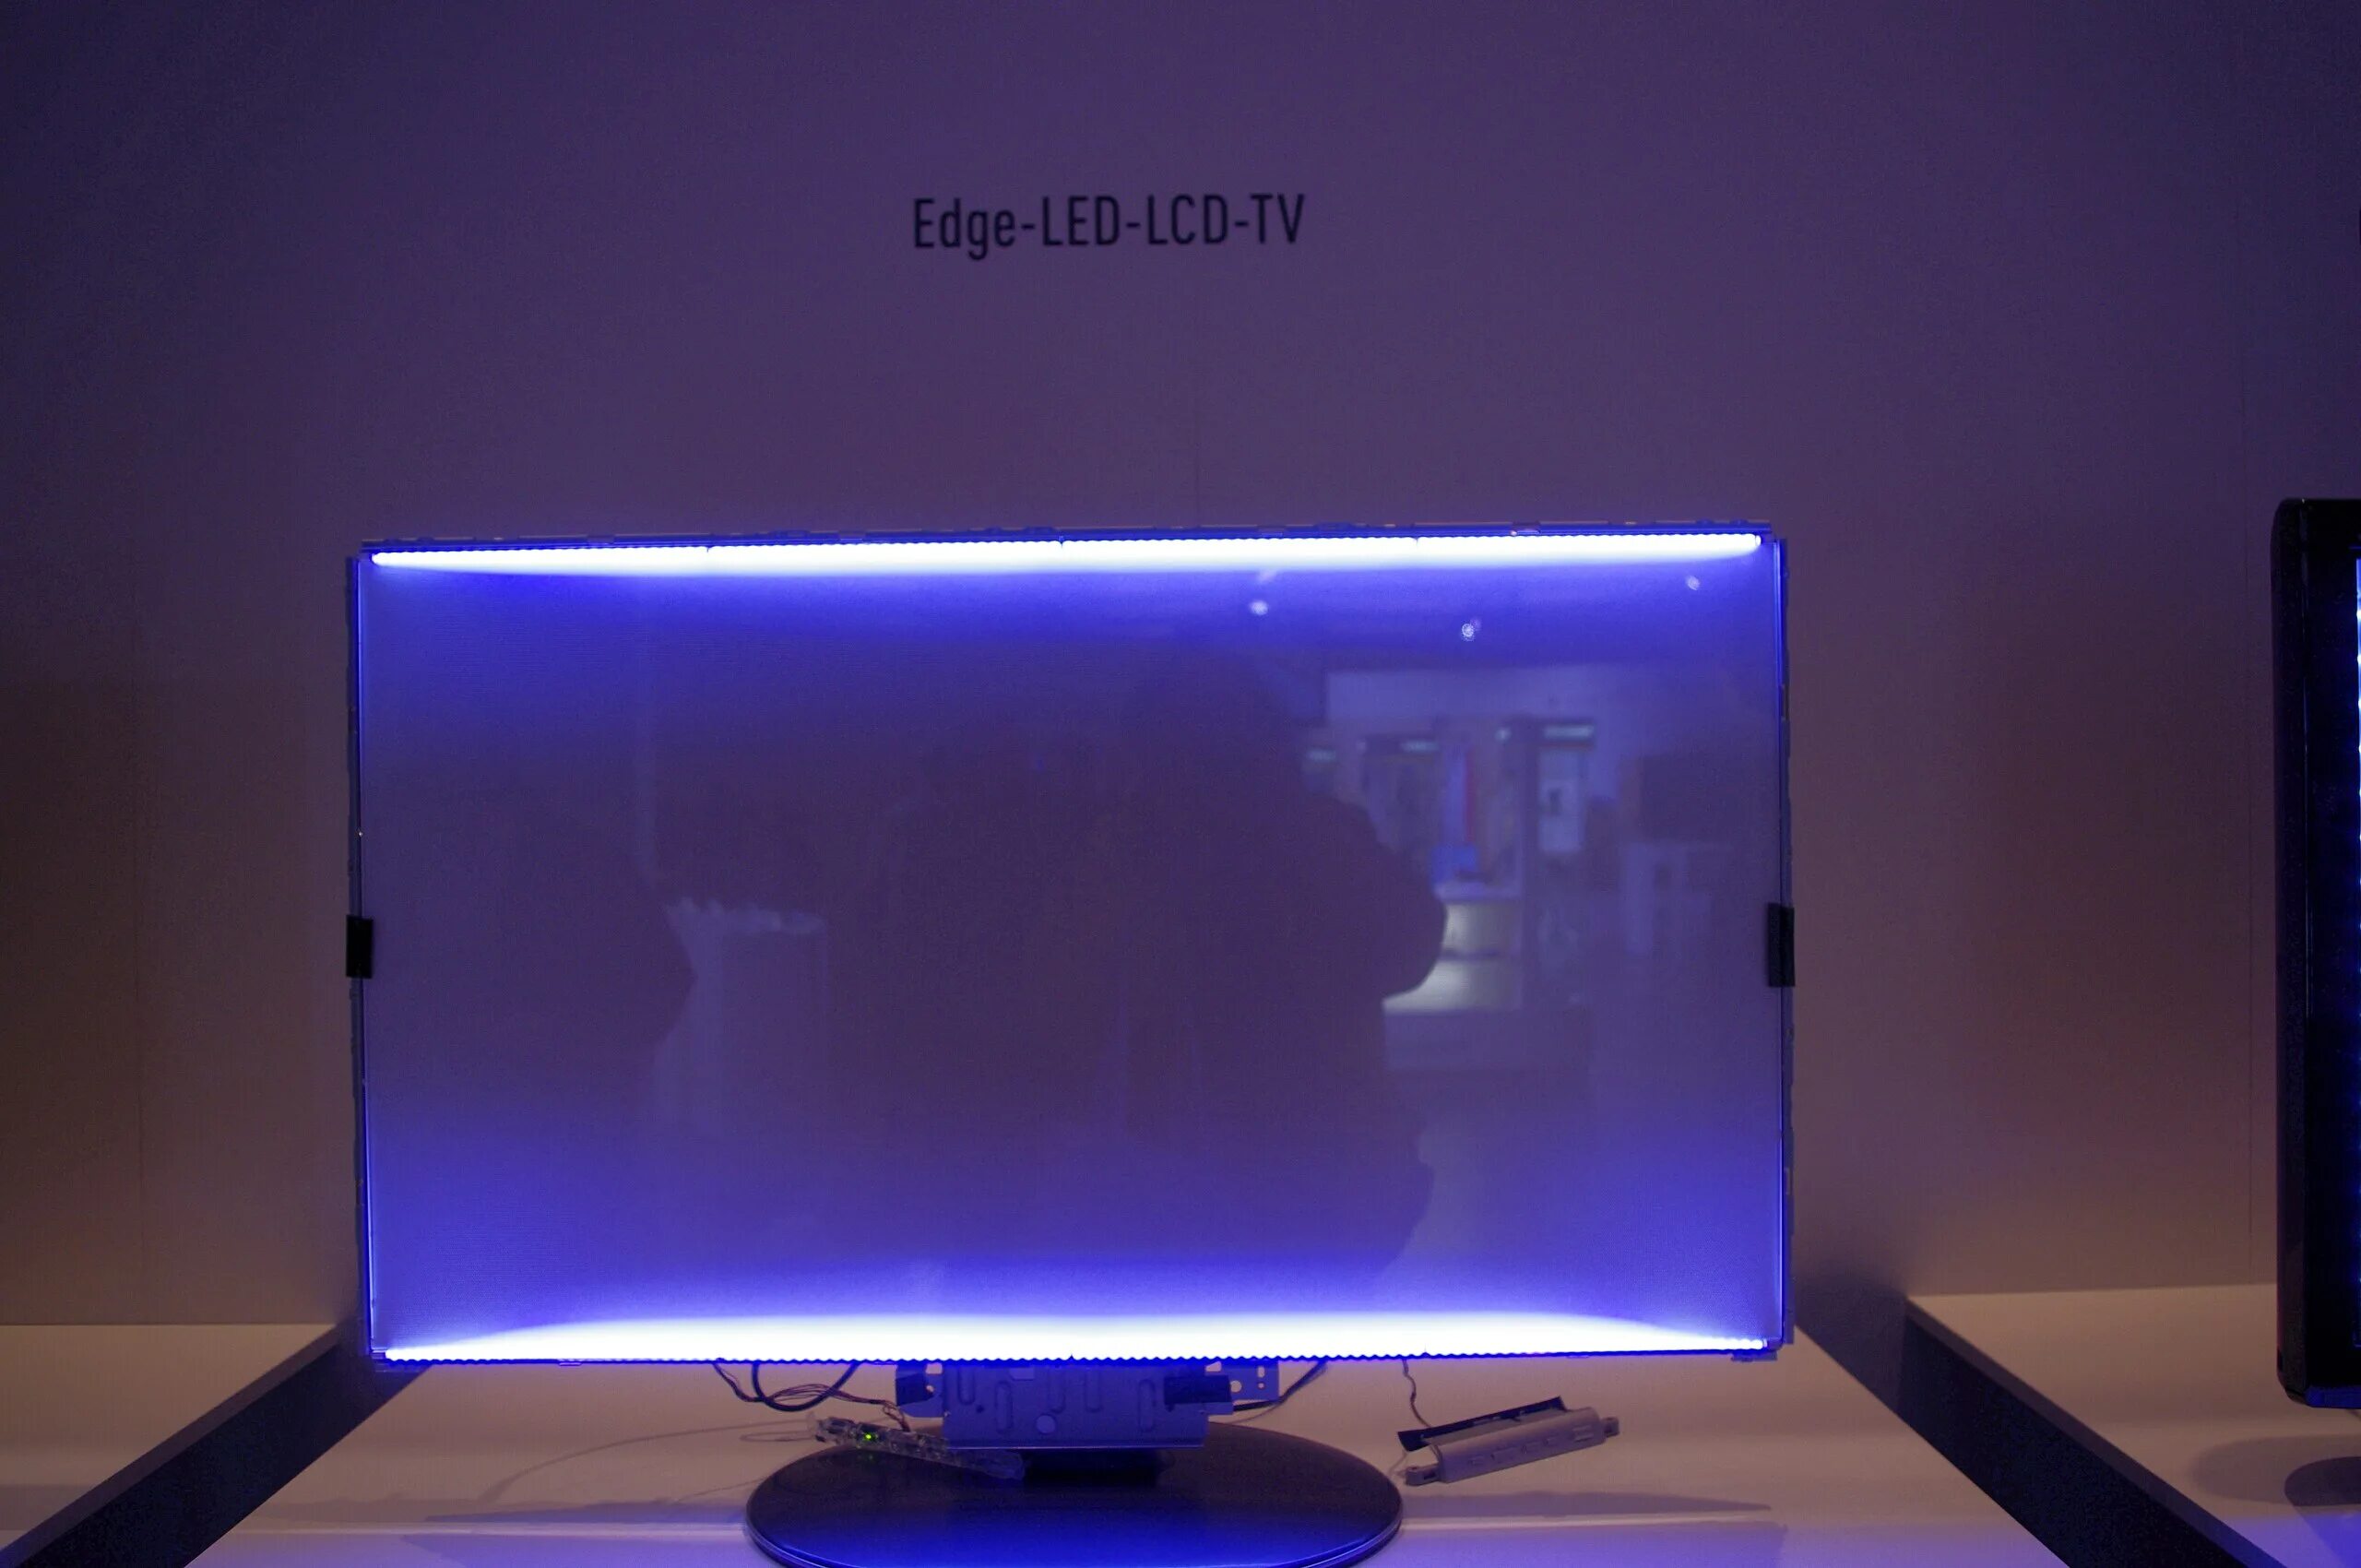 Подсветка мониторов жк. Edge led подсветка Samsung. Подсветка Edge led что это такое в телевизоре. Тип светодиодной подсветки: Edge led. Подсветка direct led что это такое в телевизоре.